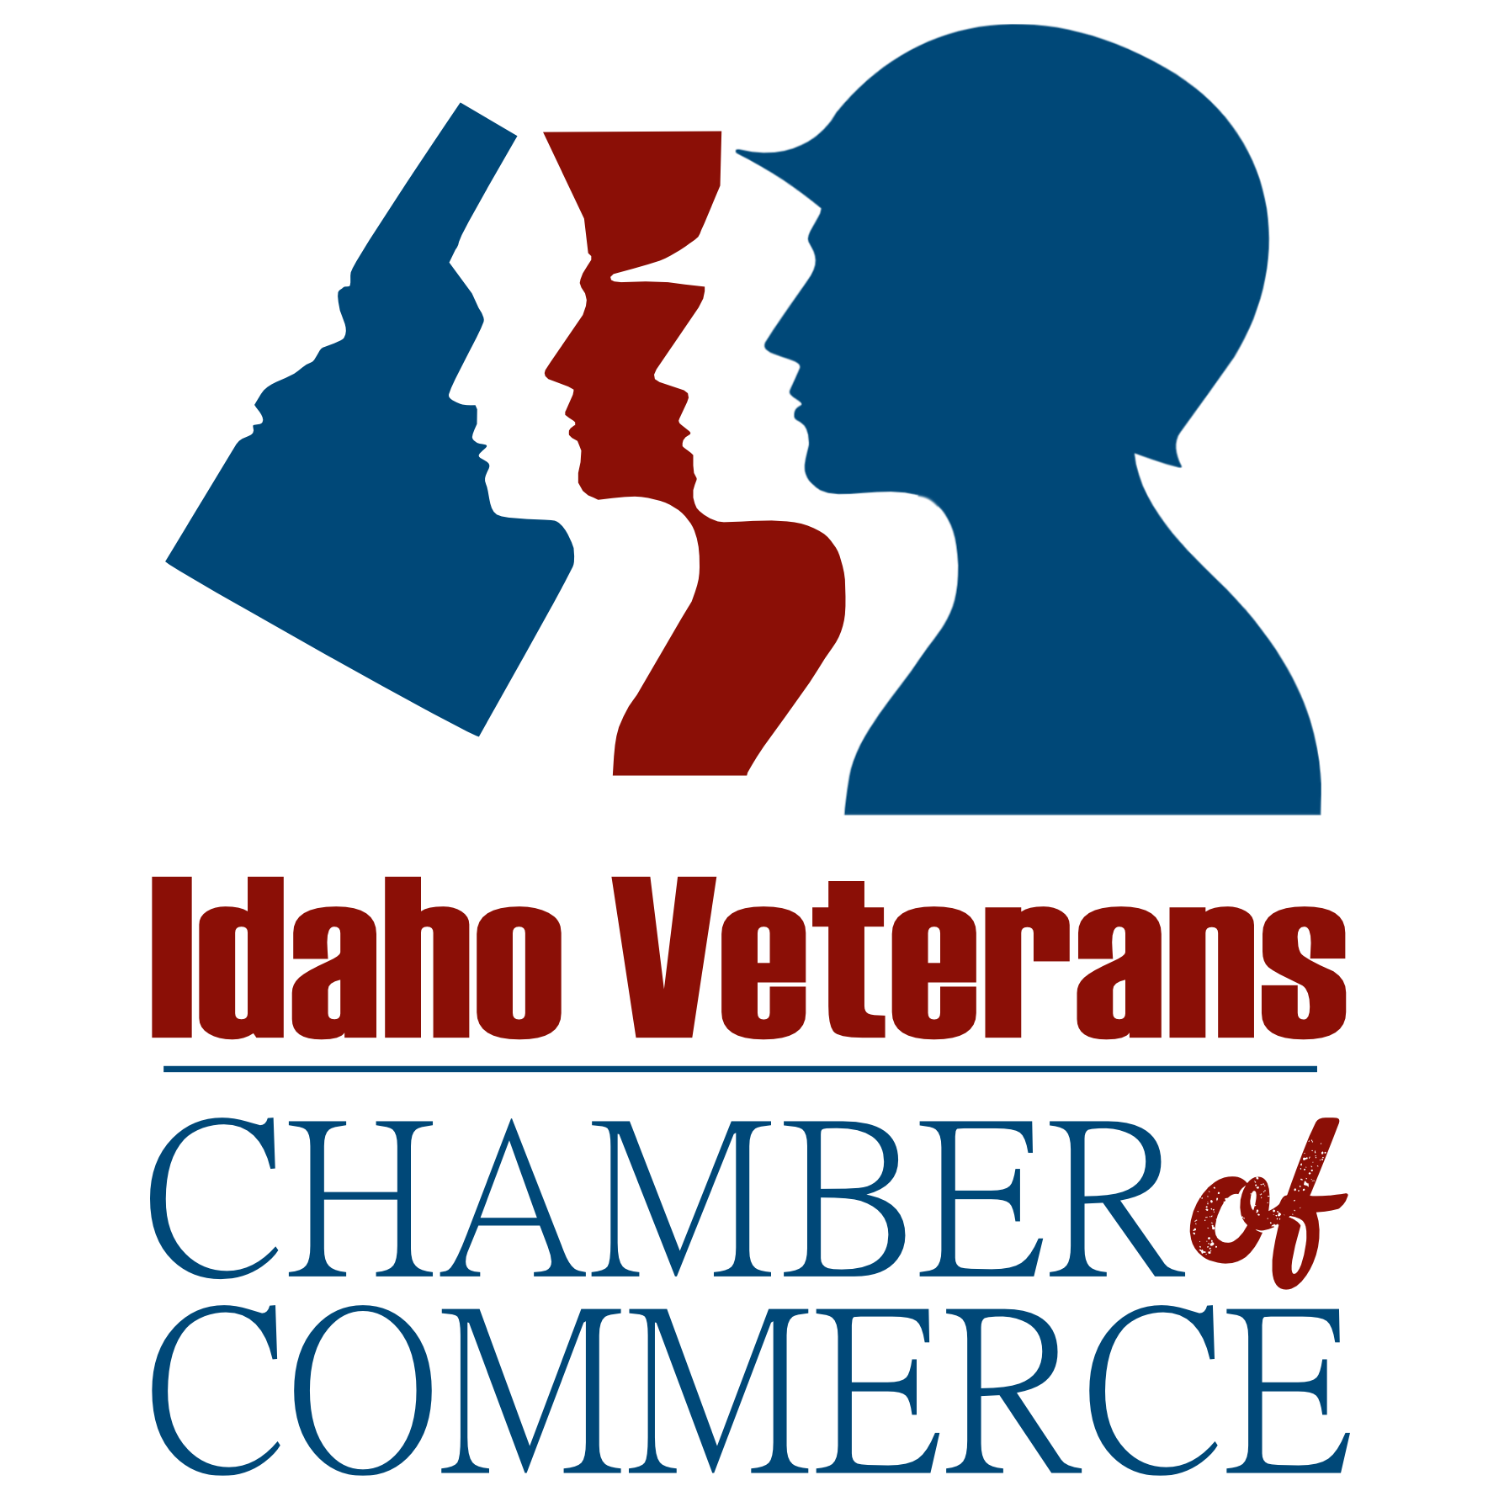 Idaho Veterans Chamber of Commerce